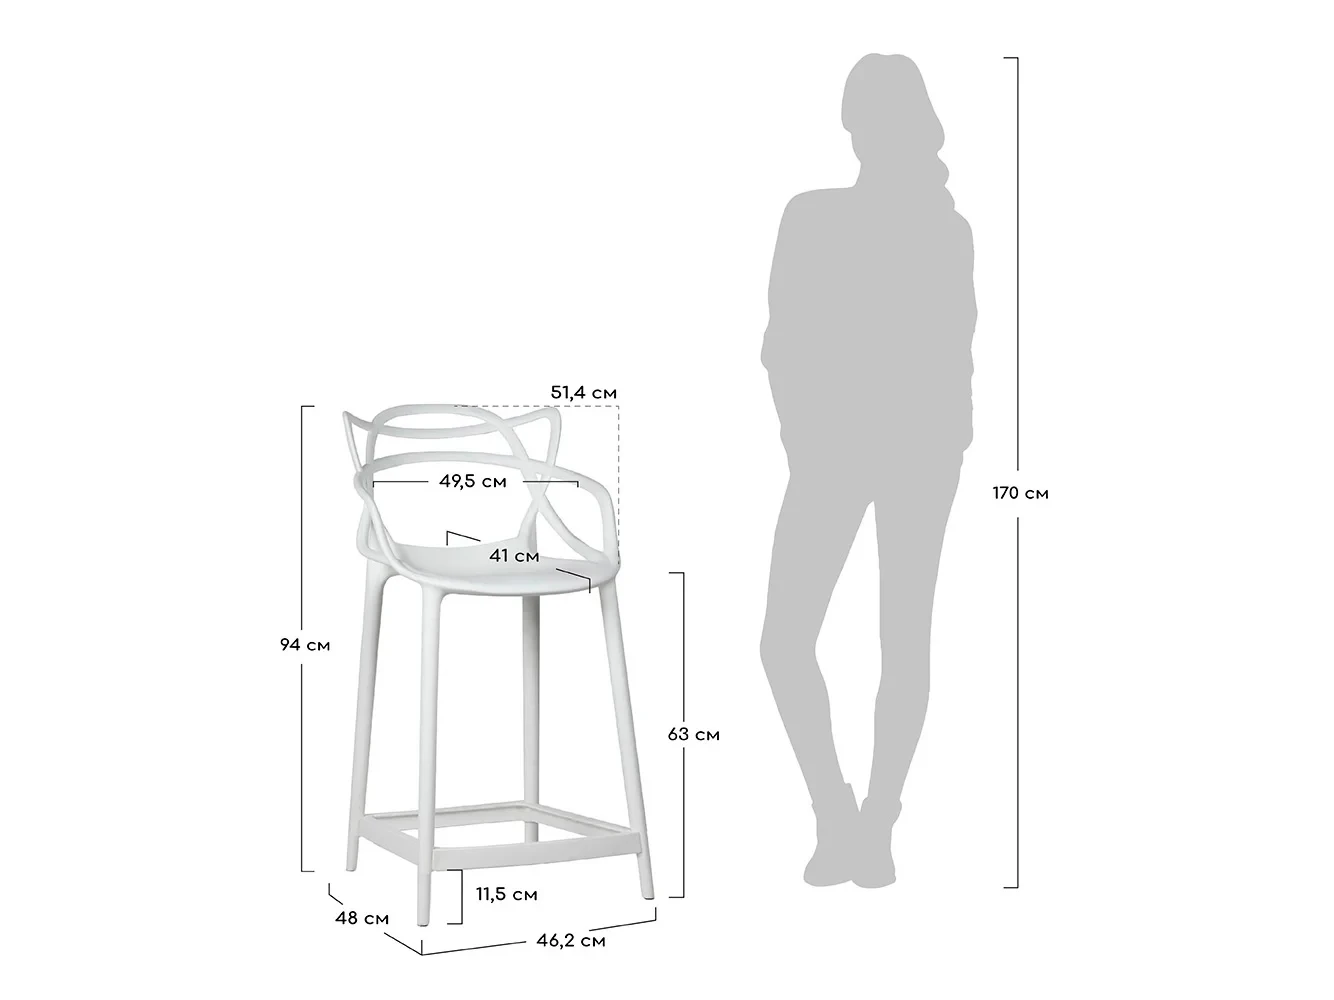 размеры барных и полубарных стульев